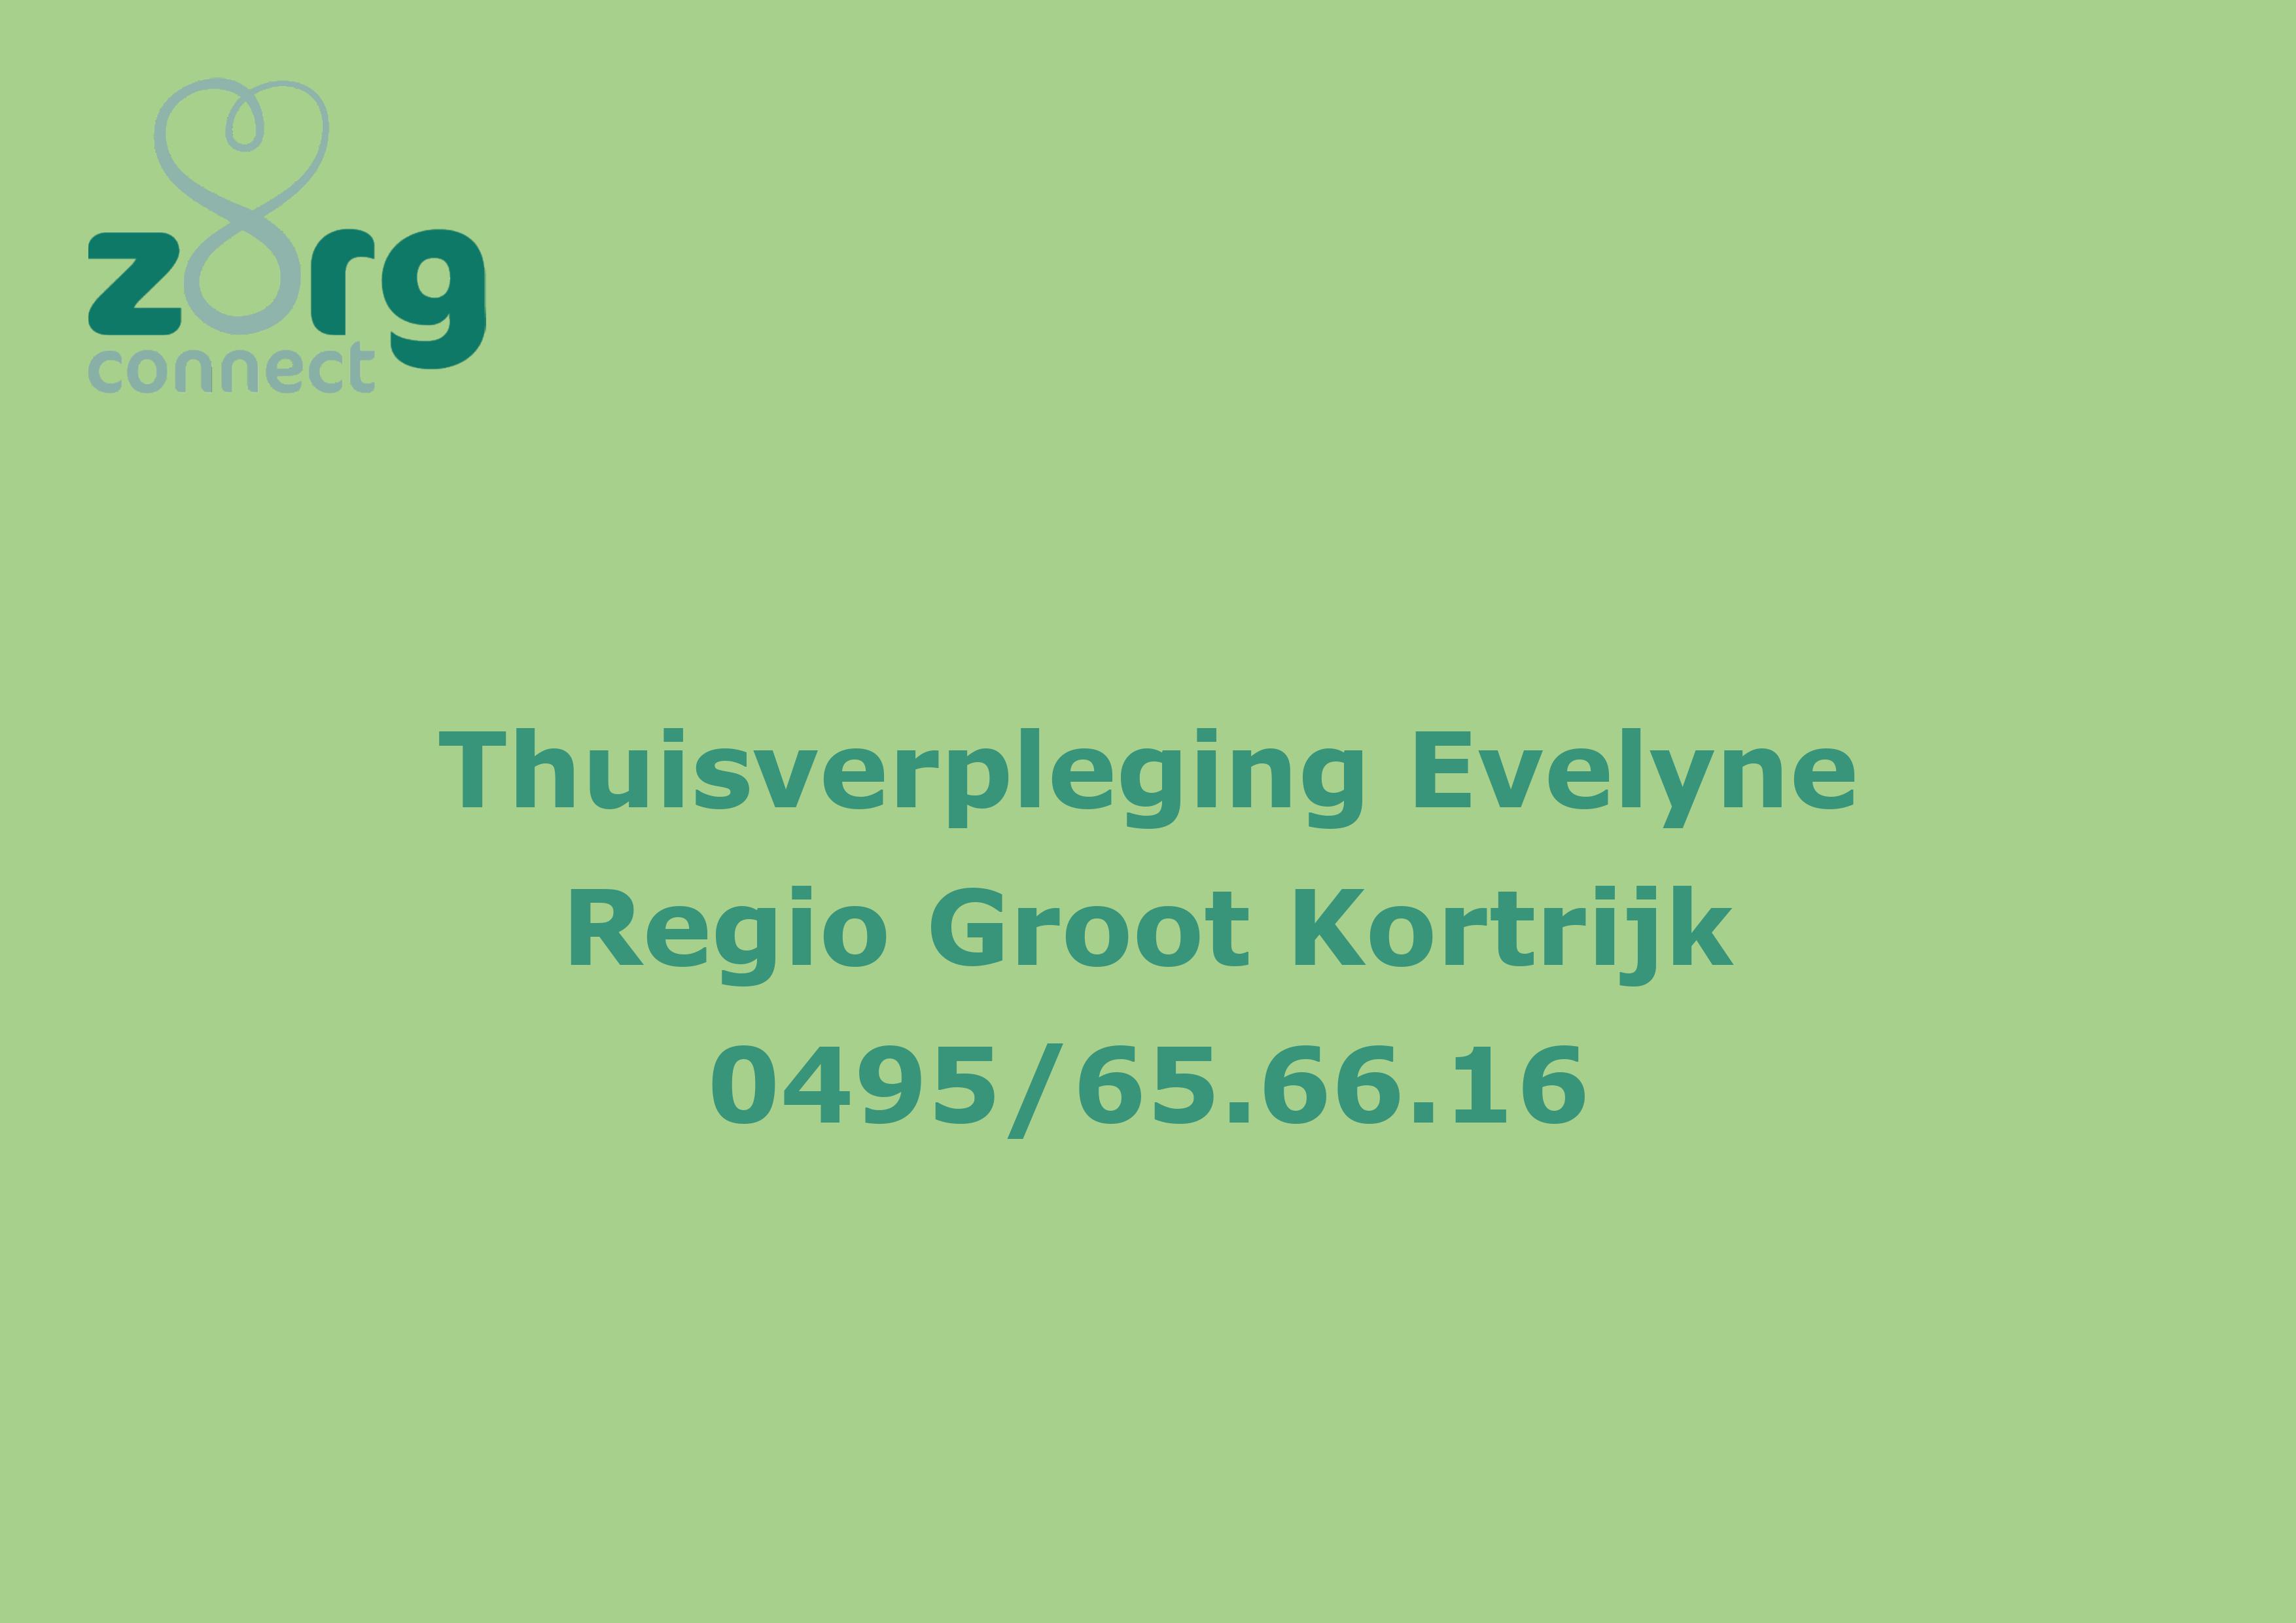 Thuisverpleging Evelyne  https://www.thuisverplegingevelyne.be/